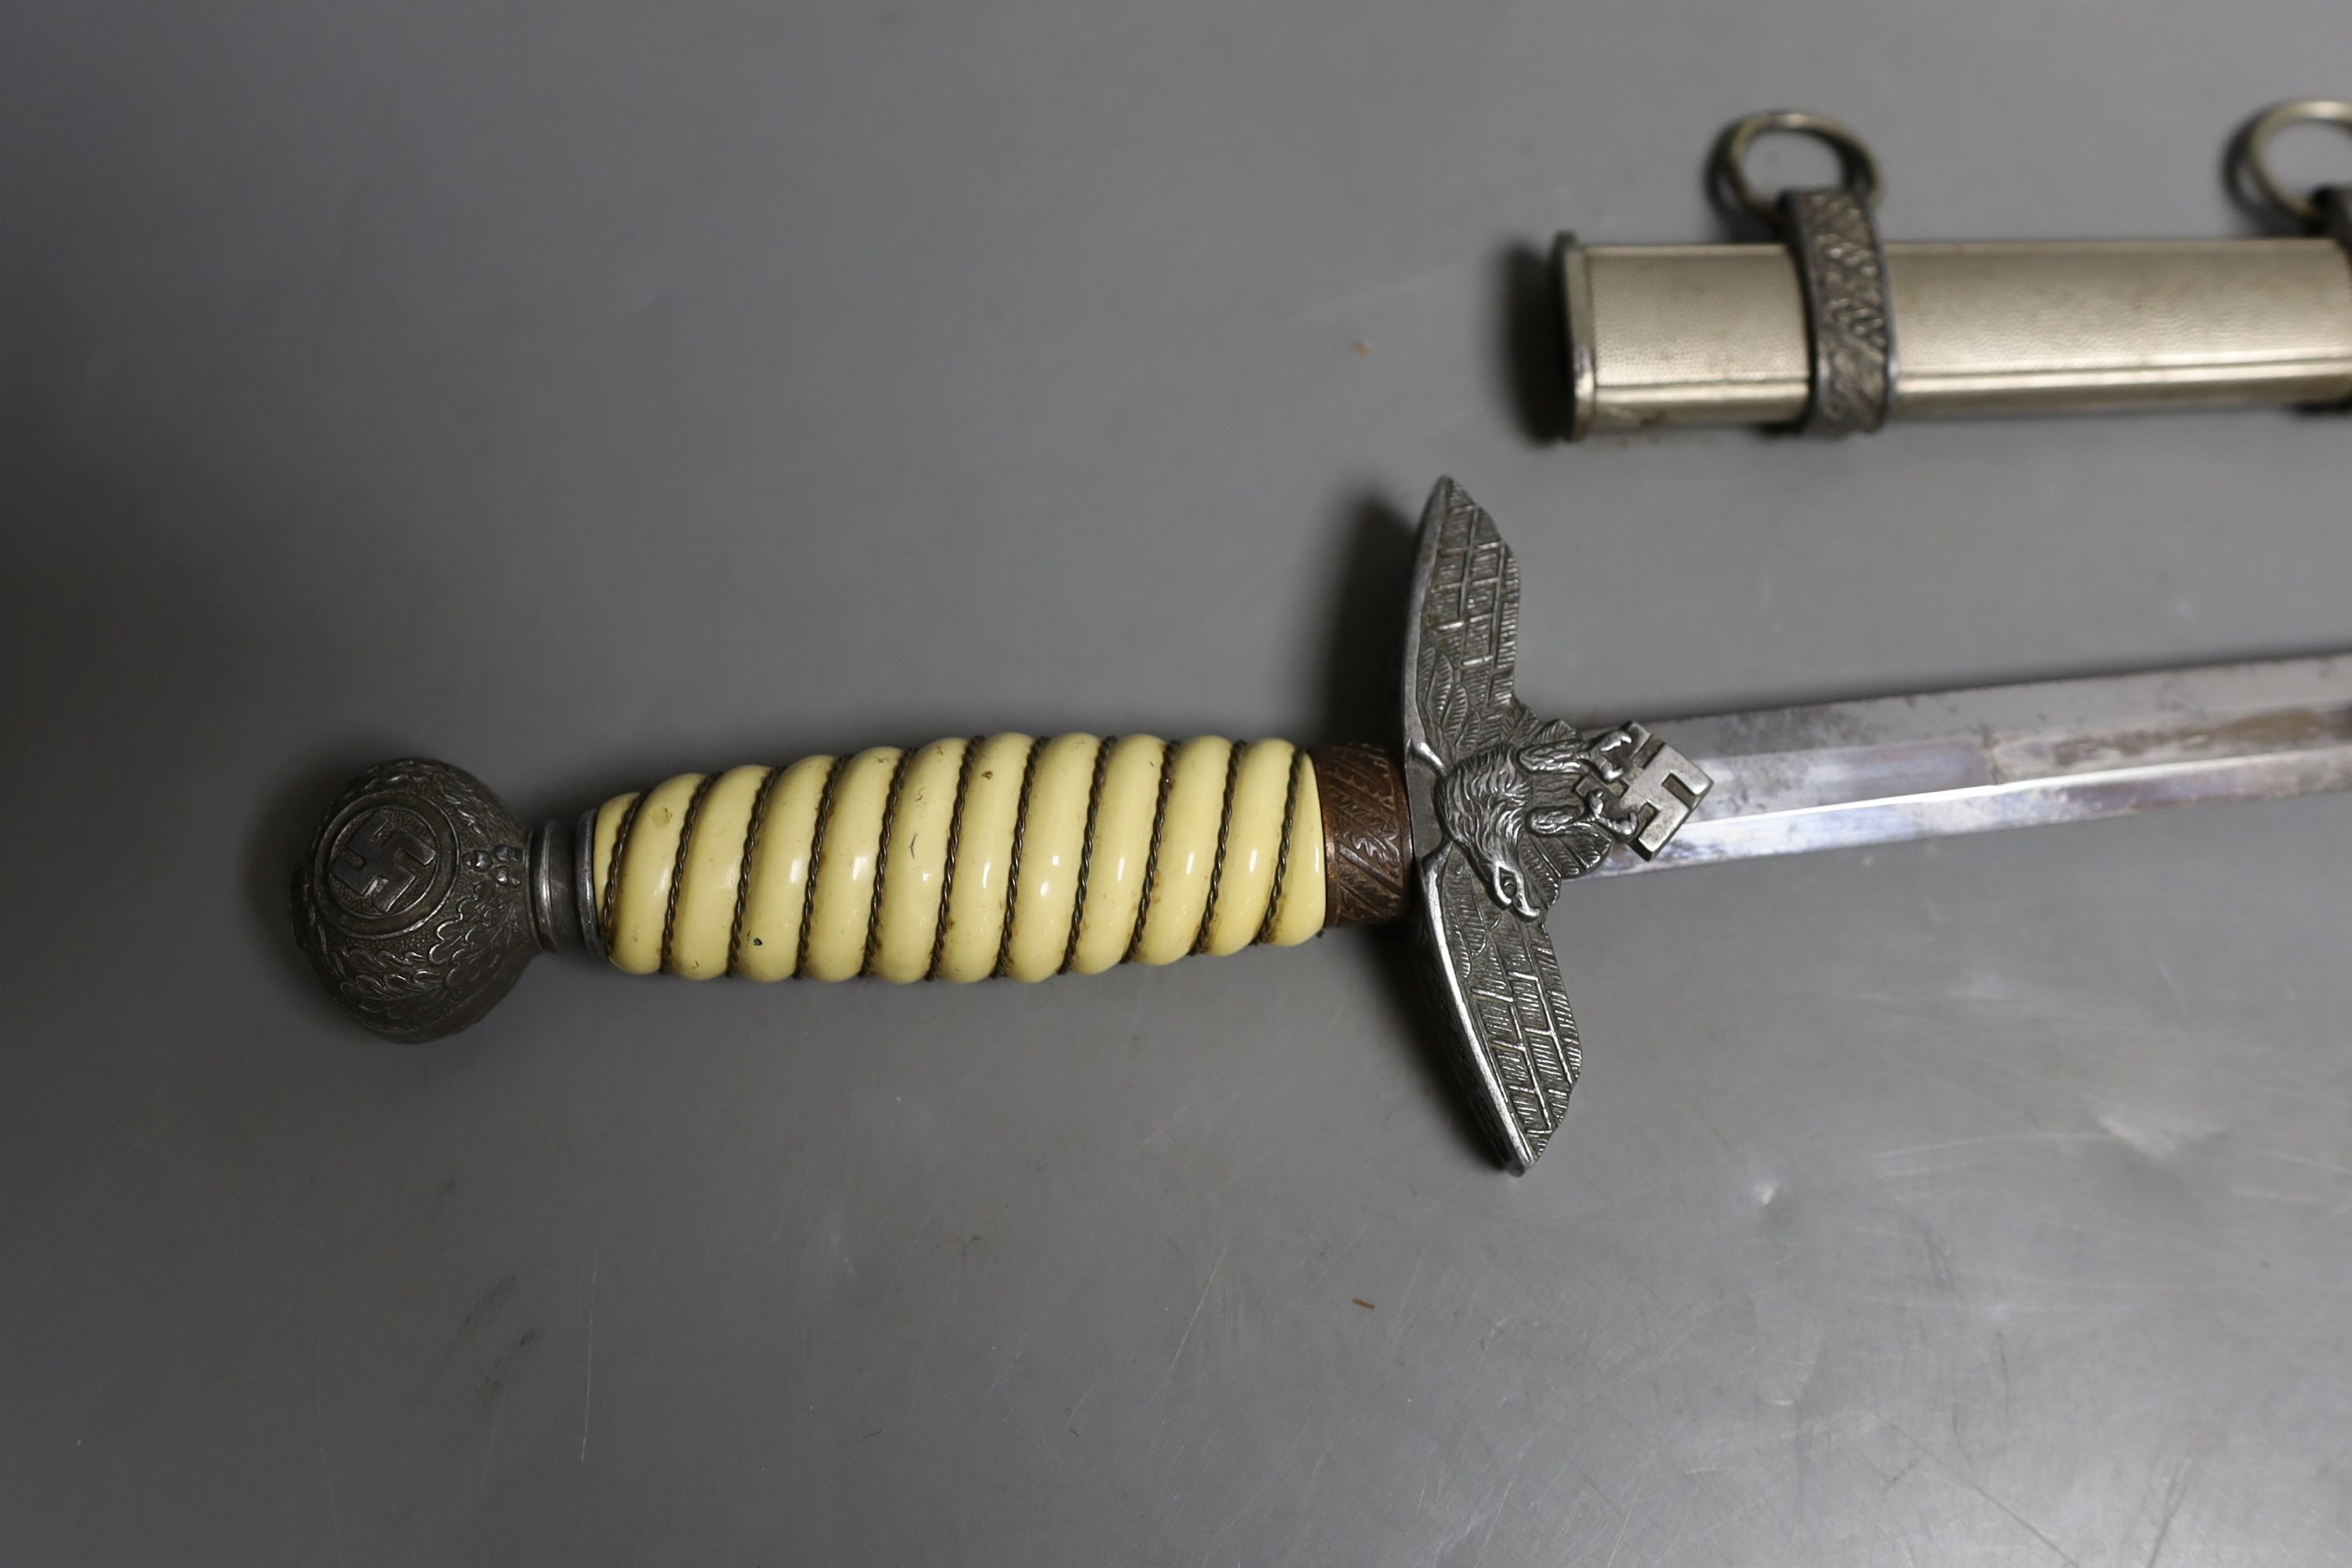 An original Italian officer's dagger MVSN, no maker, 43 cms long.